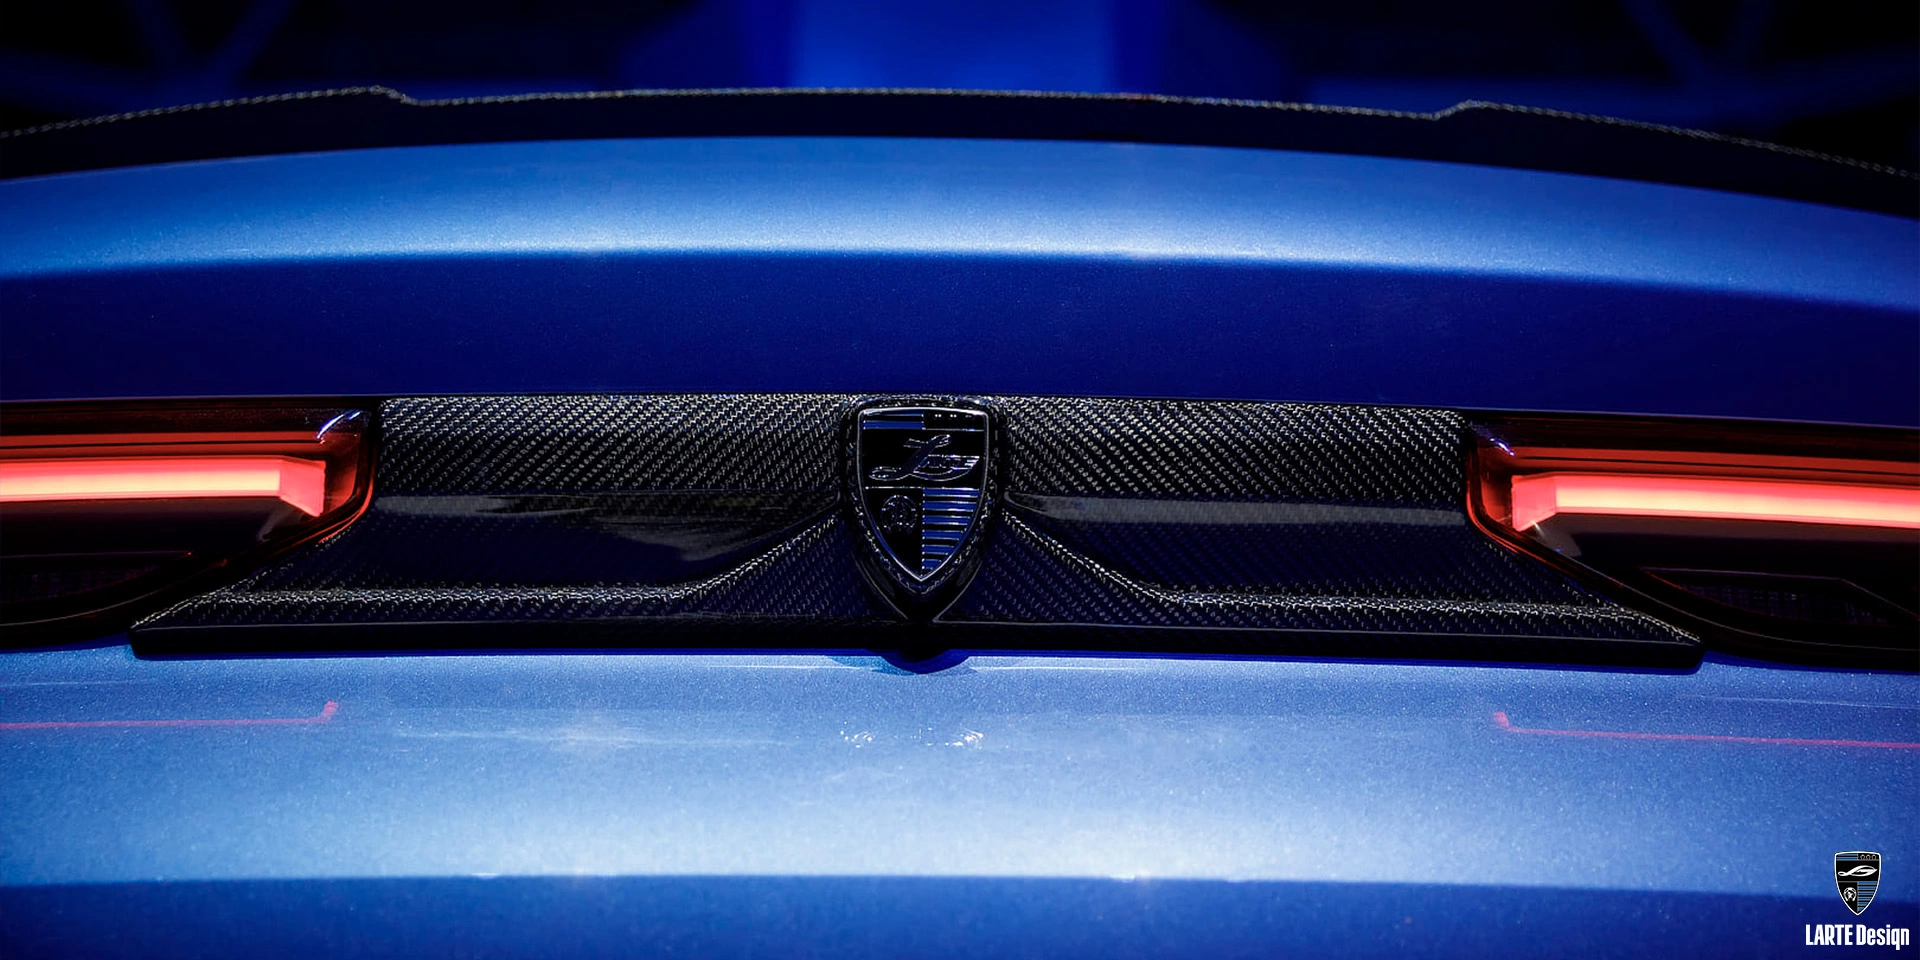 Luxuriöses Heckpaneel aus Carbonfaser für den LARTE Performance BMW X6 M Sport G06 in Phytonic Blue Metallic